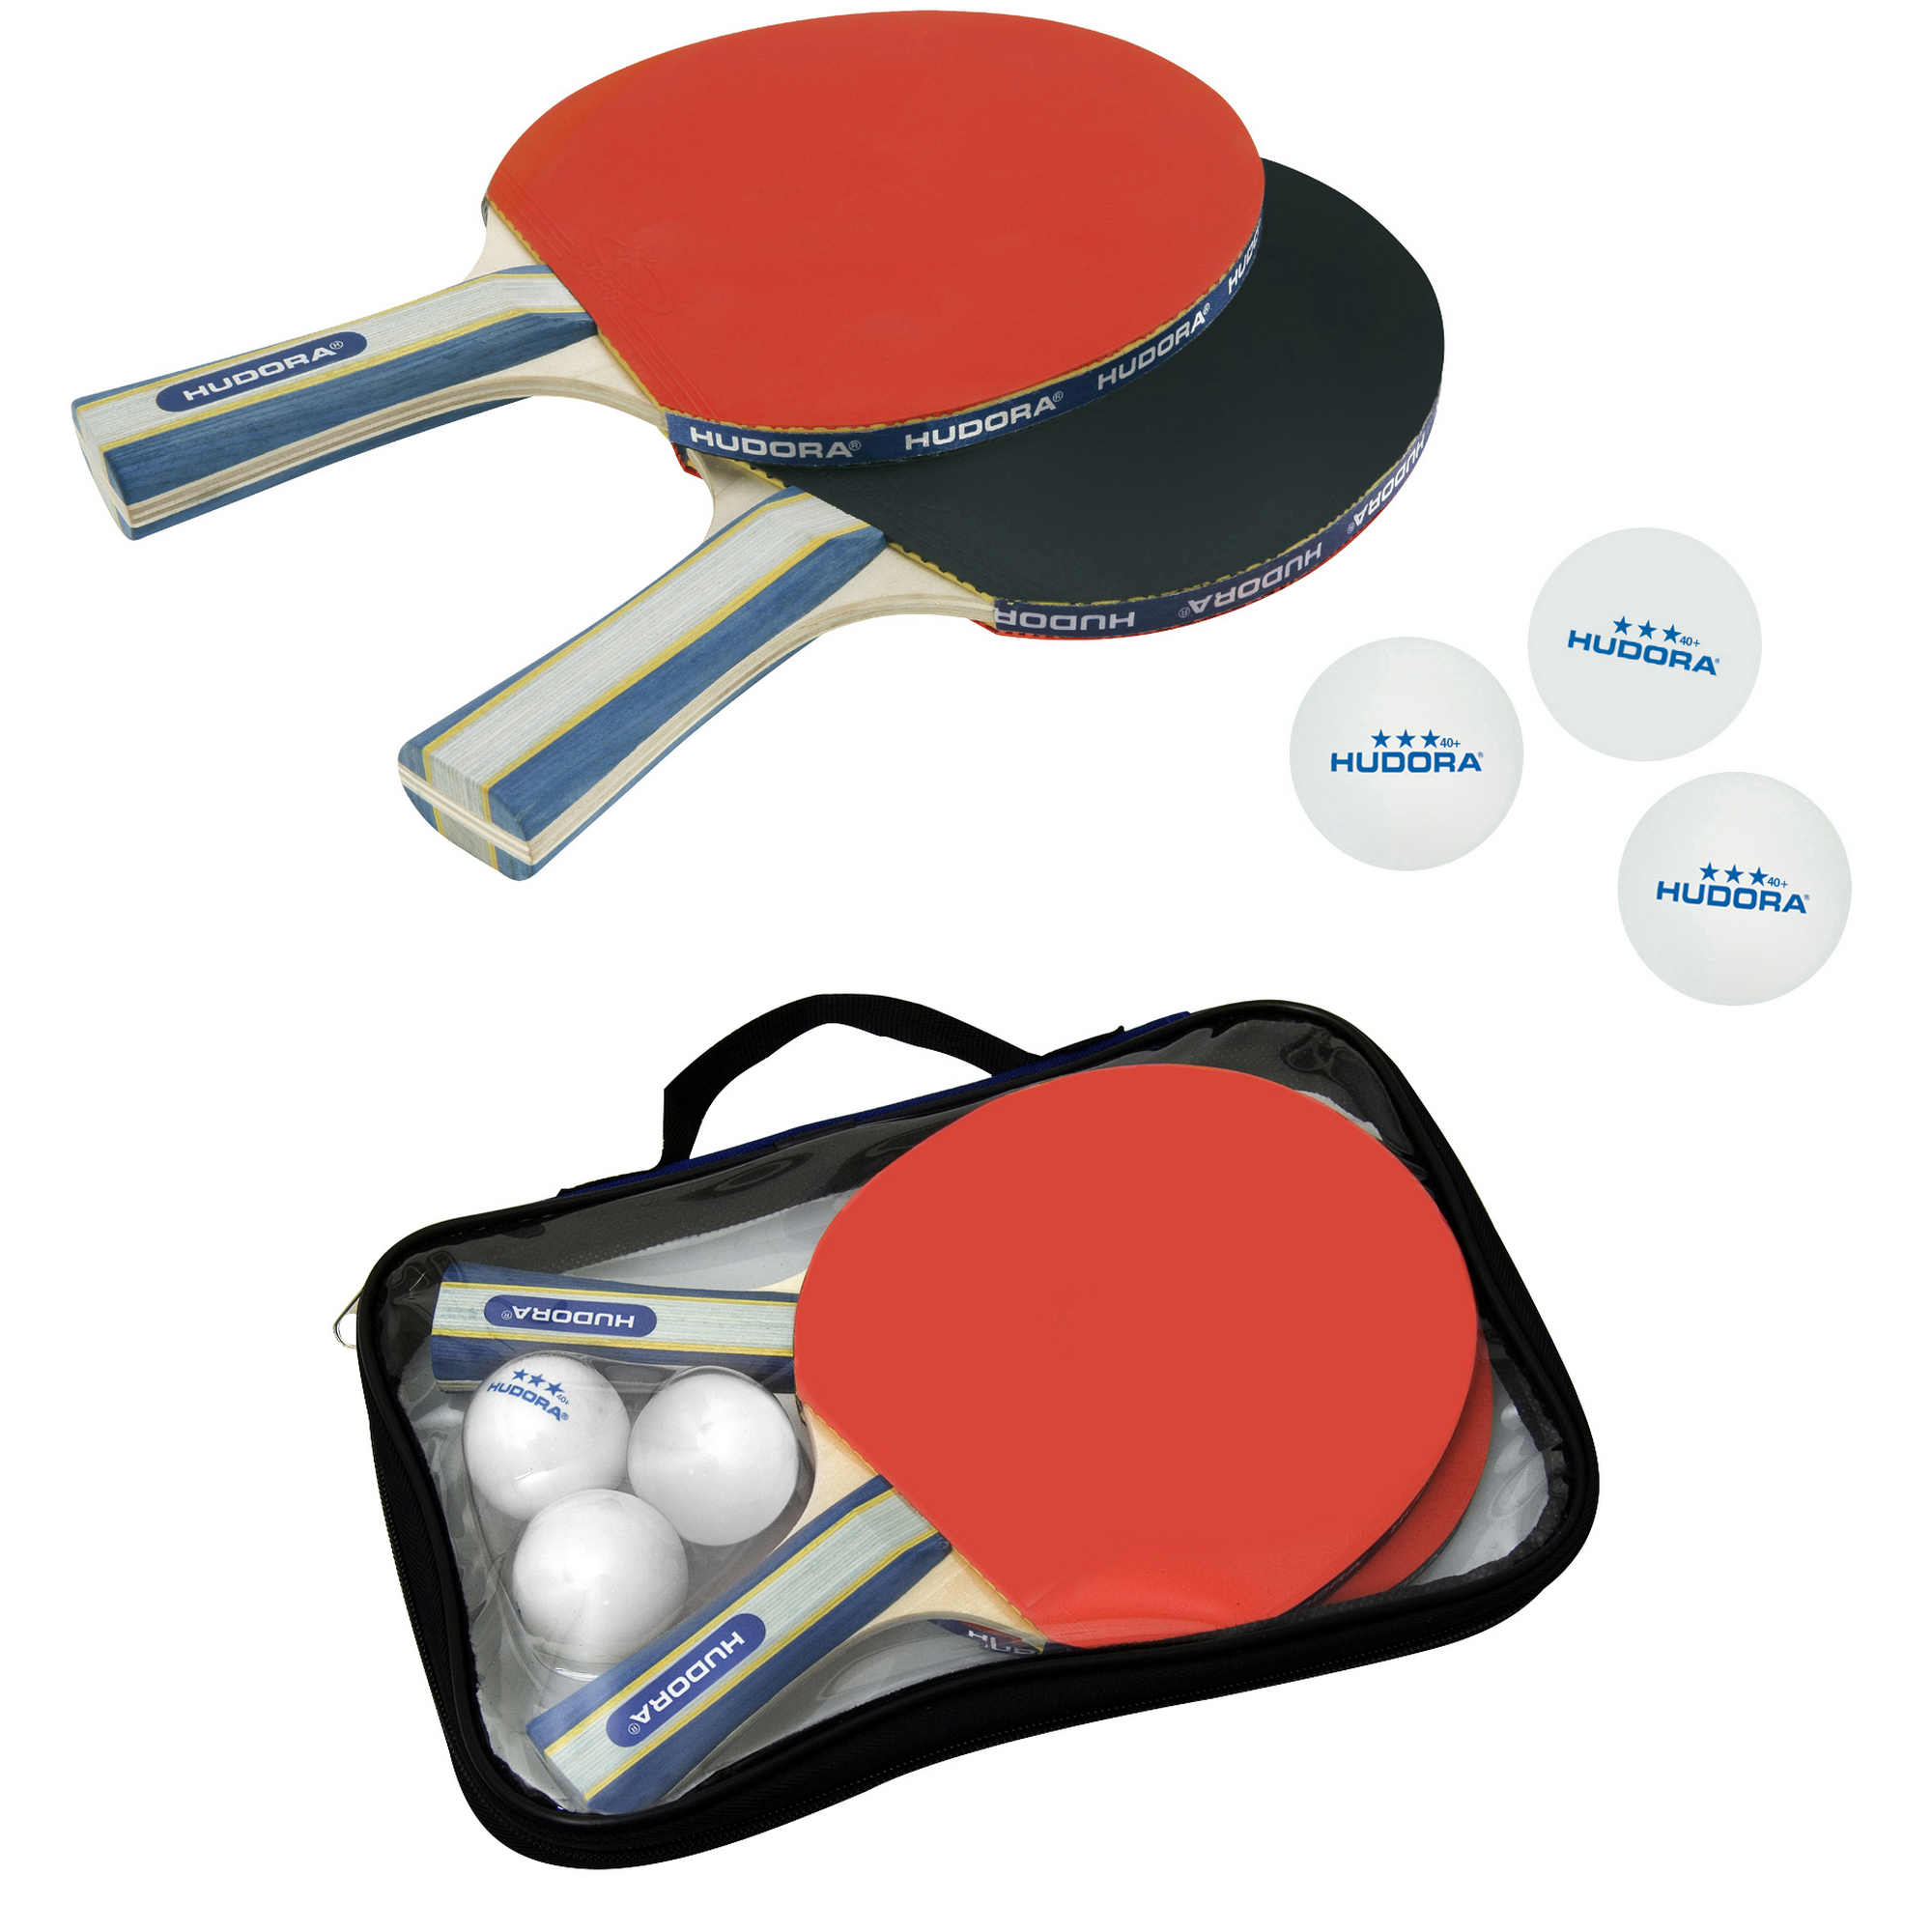 Tischtennisset 'New Contest 2.0' inklusive Schlägertasche + product picture